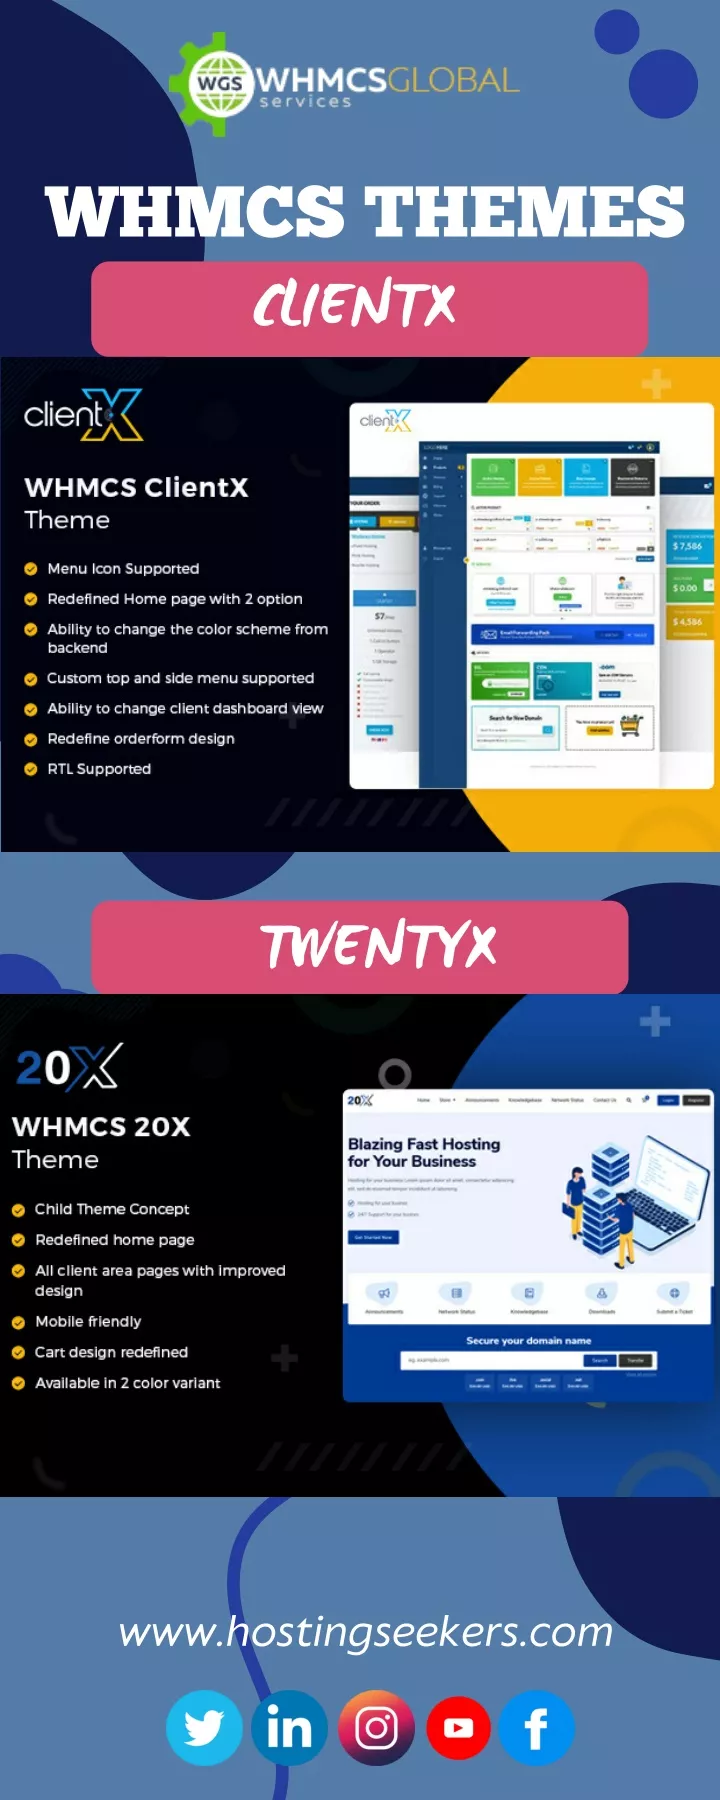 whmcs themes clientx